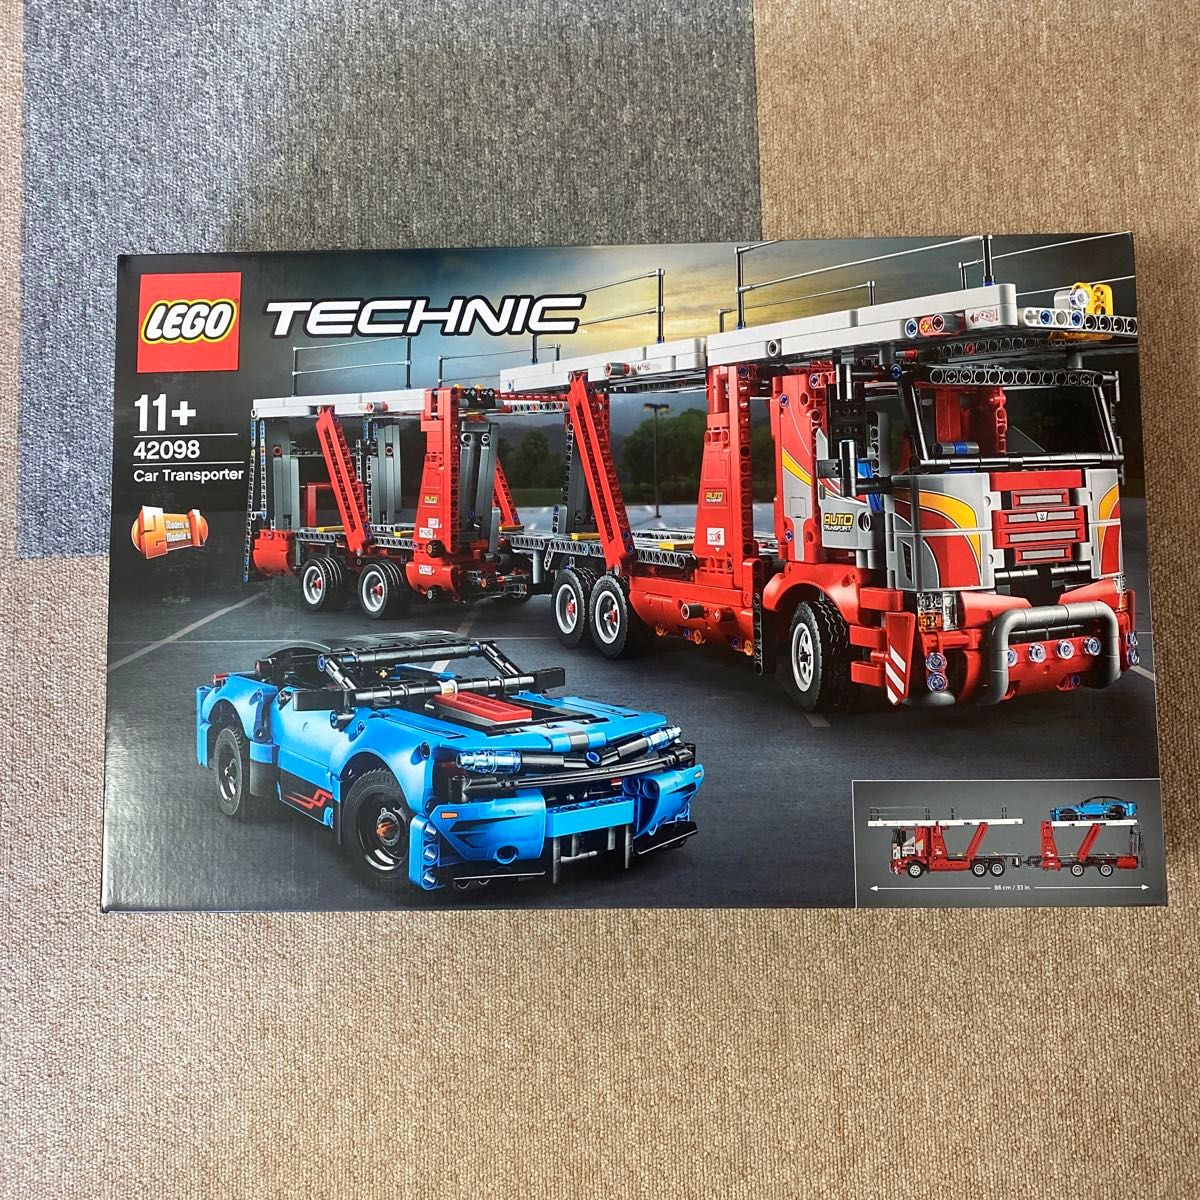 レゴ(LEGO) テクニック 車両輸送車 42098 車とカーキャリアのセットです